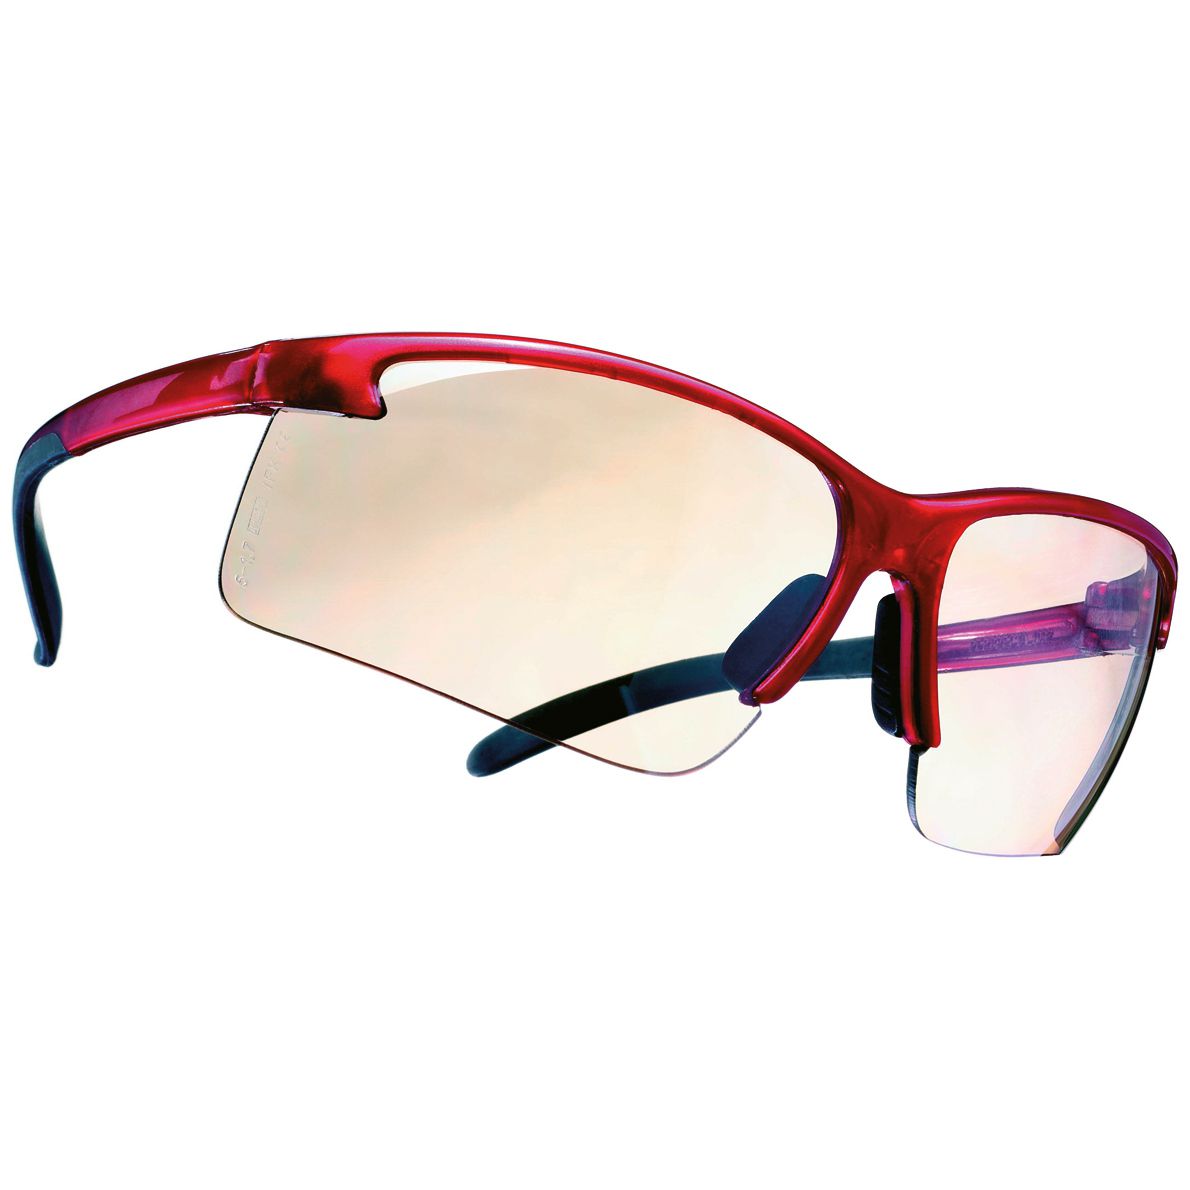 MSA Perspecta 1900 Schutzbrille - kratz- & beschlagfest dank Sightgard-Beschichtung - EN 166/172 - Rot/Goldspiegel